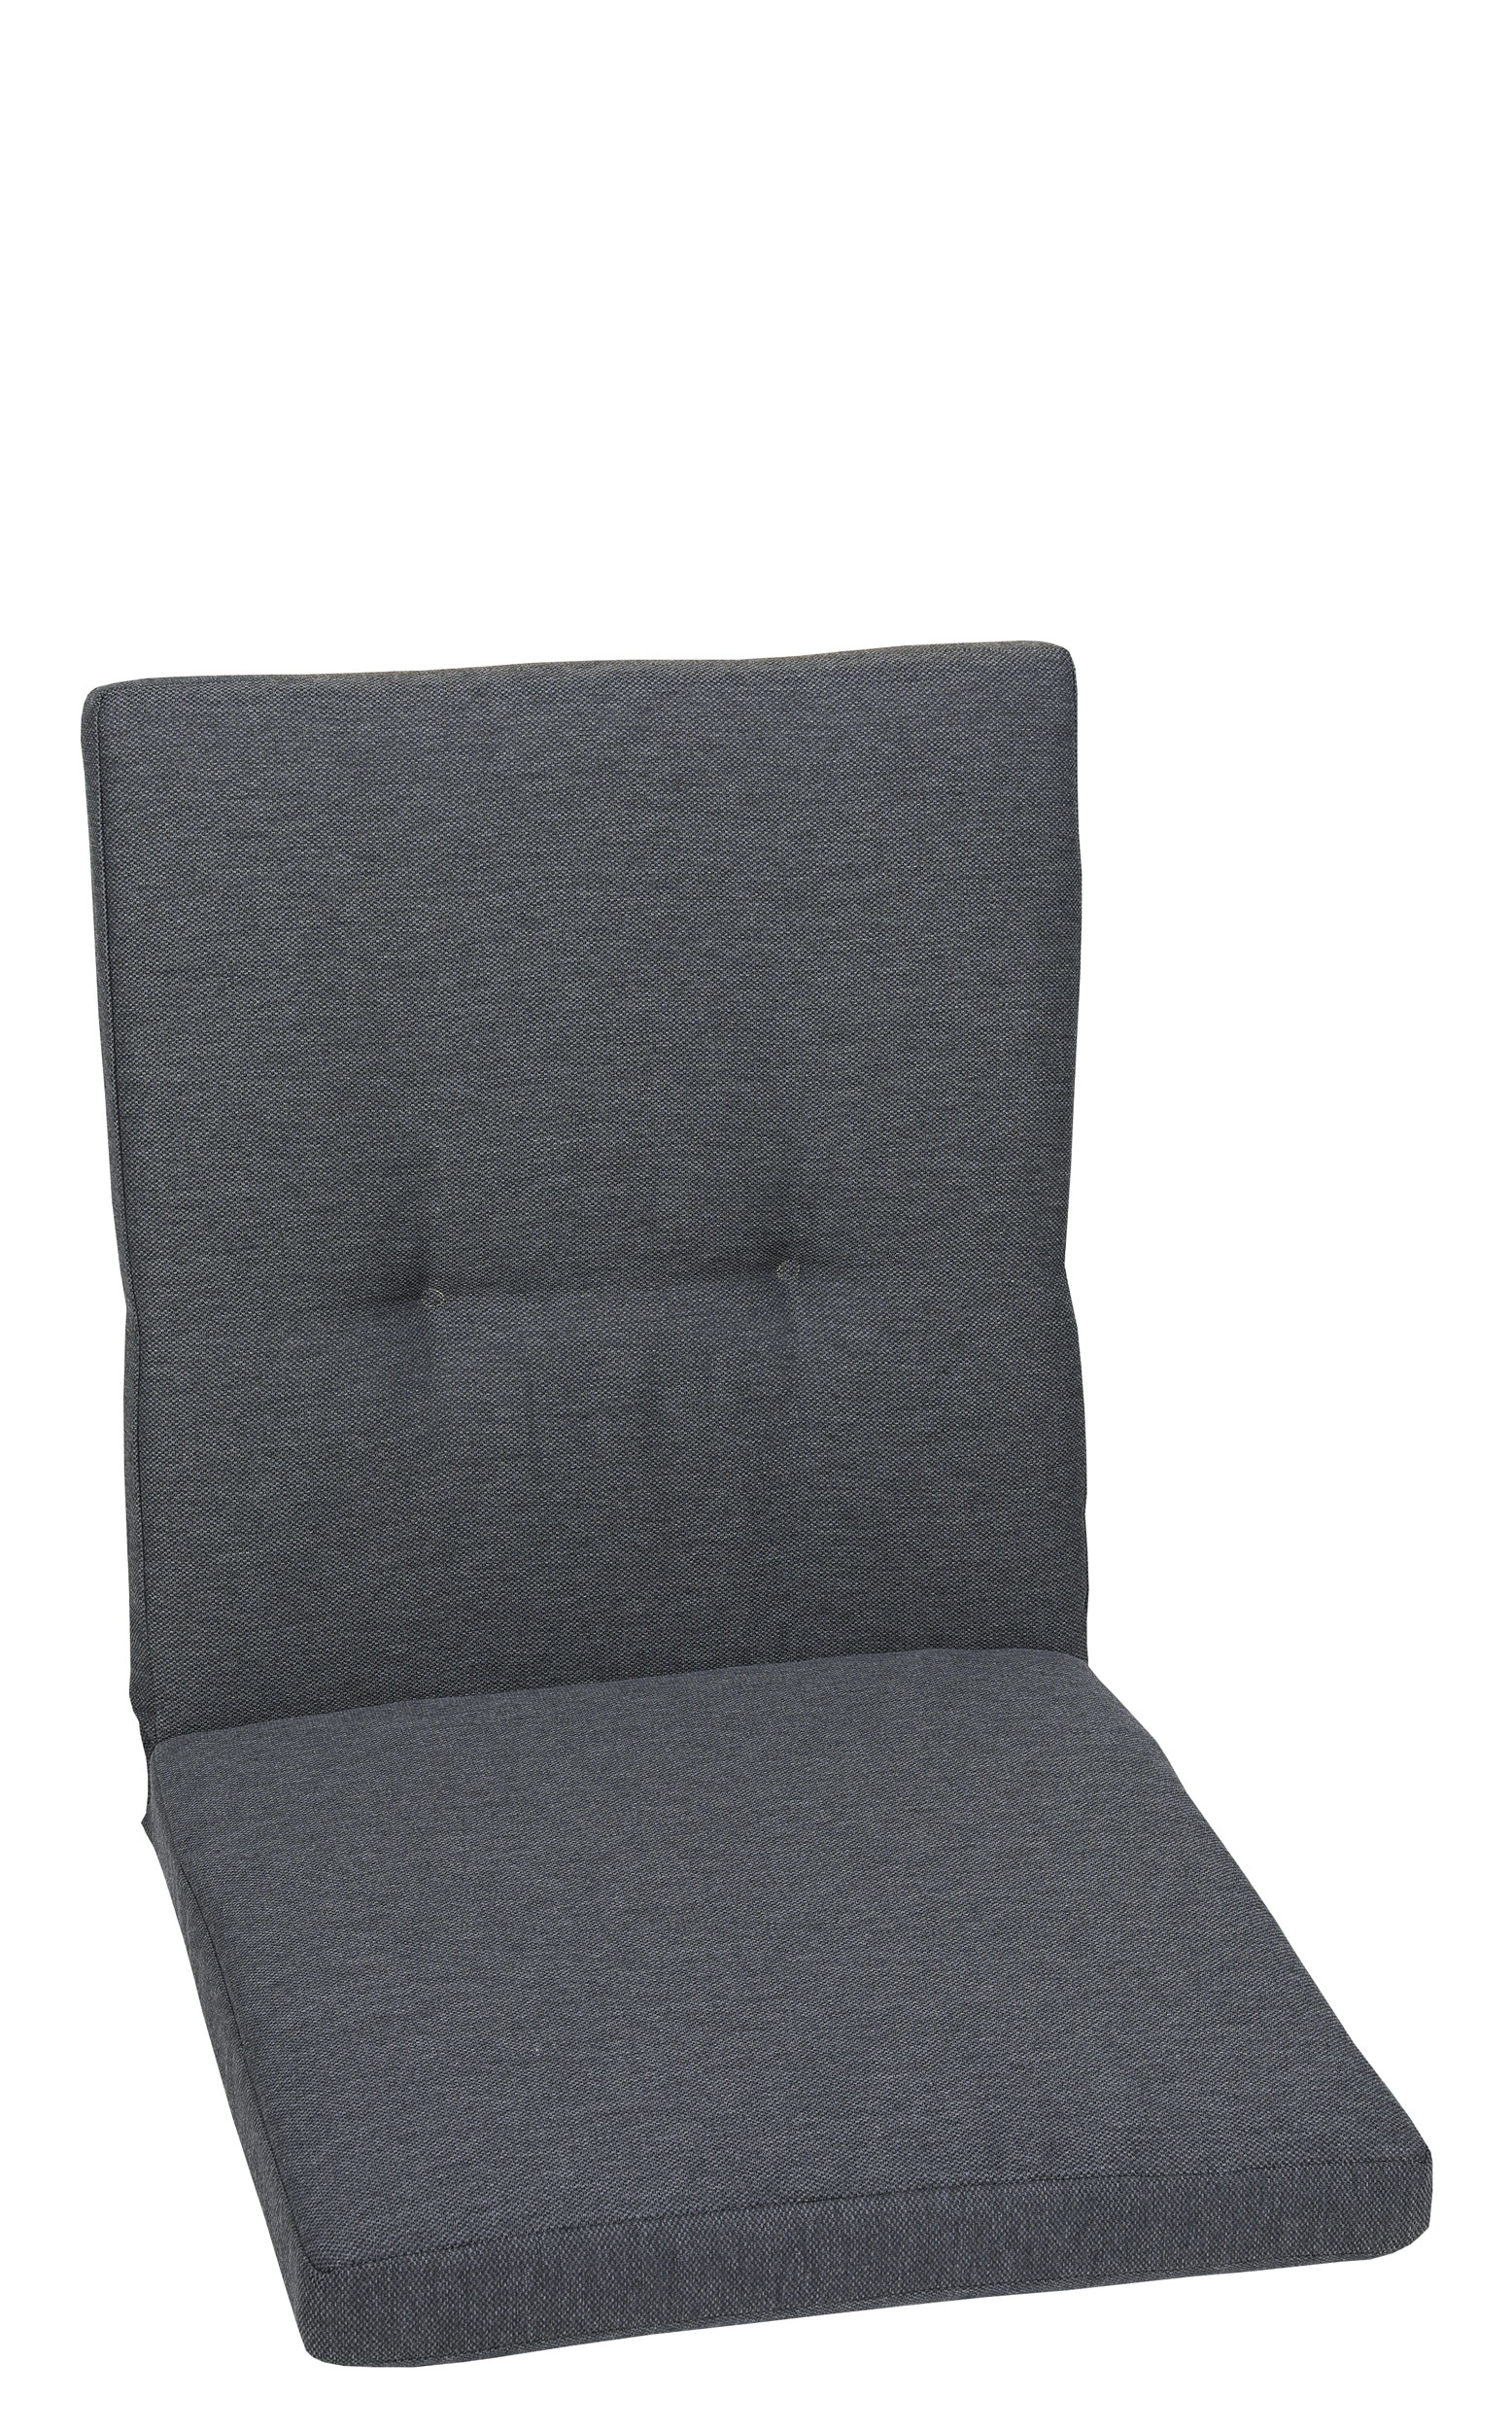 GO-DE Sessel-Auflage Möbel | Schaffrath Onlineshop nieder